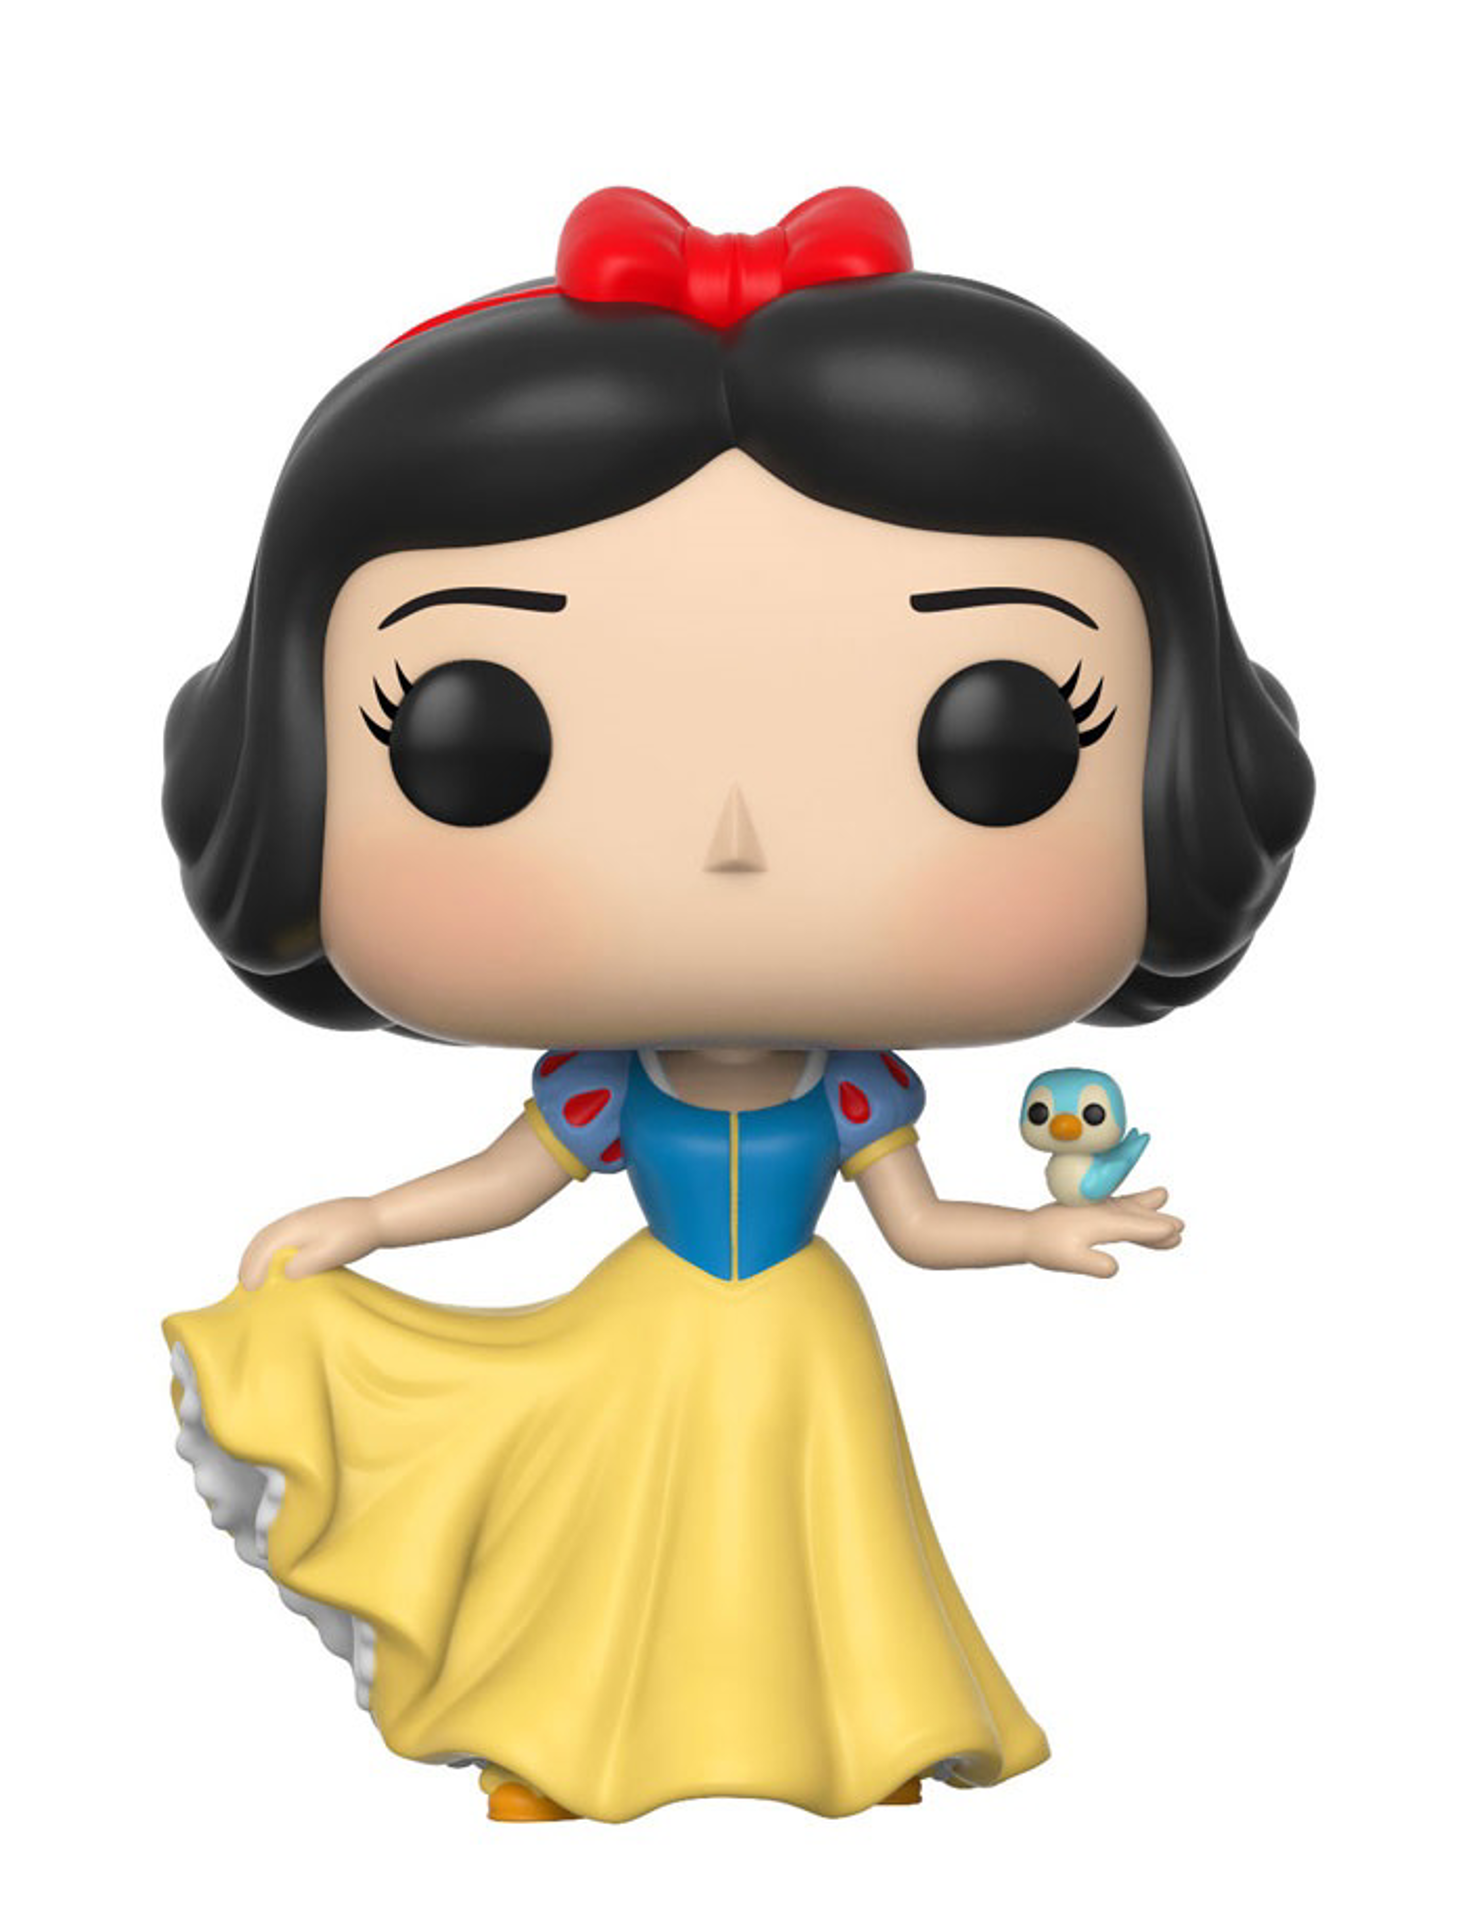 Funko Pop! Disney: Snow White and the Seven Dwarfs - Snow White